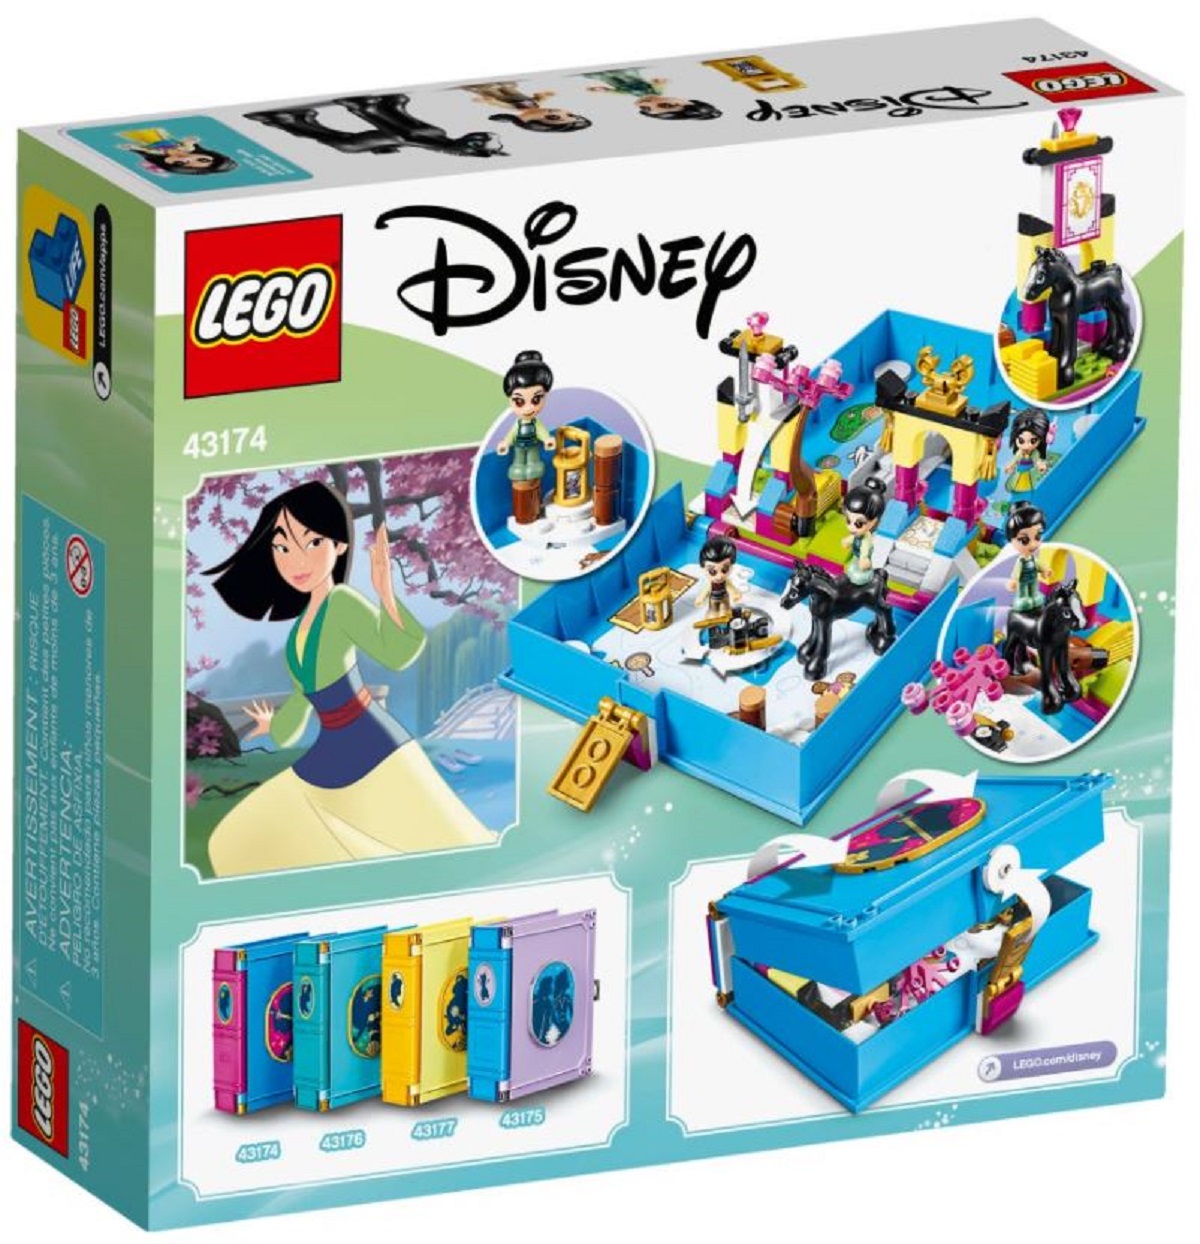 Lego Disney Princess. Aventuri din cartea de povesti cu Mulan